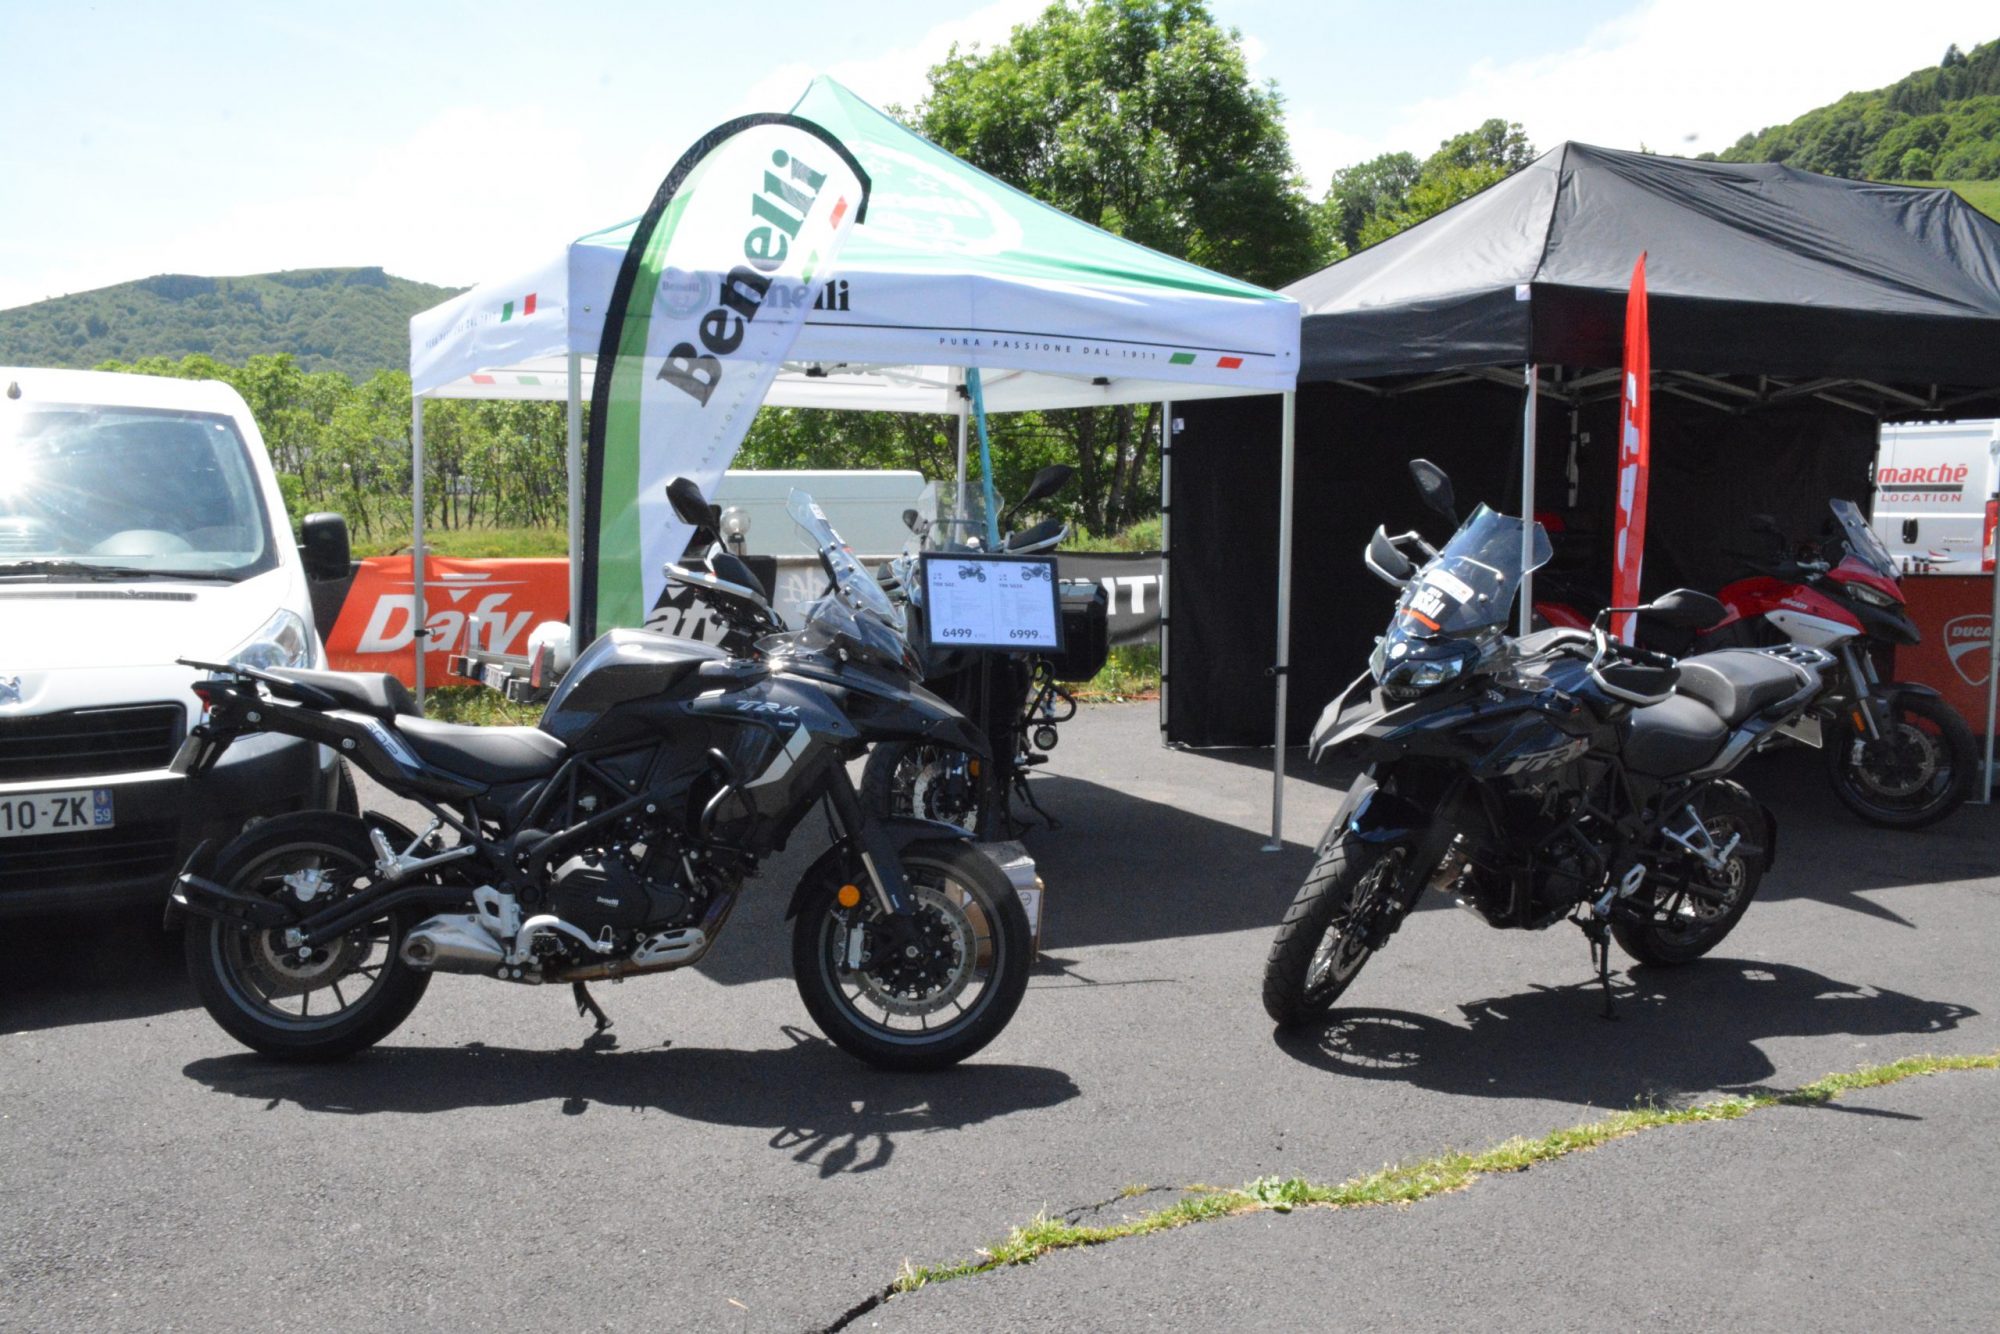 Stand Benelli avec deux motos en devanture dans un espace vert